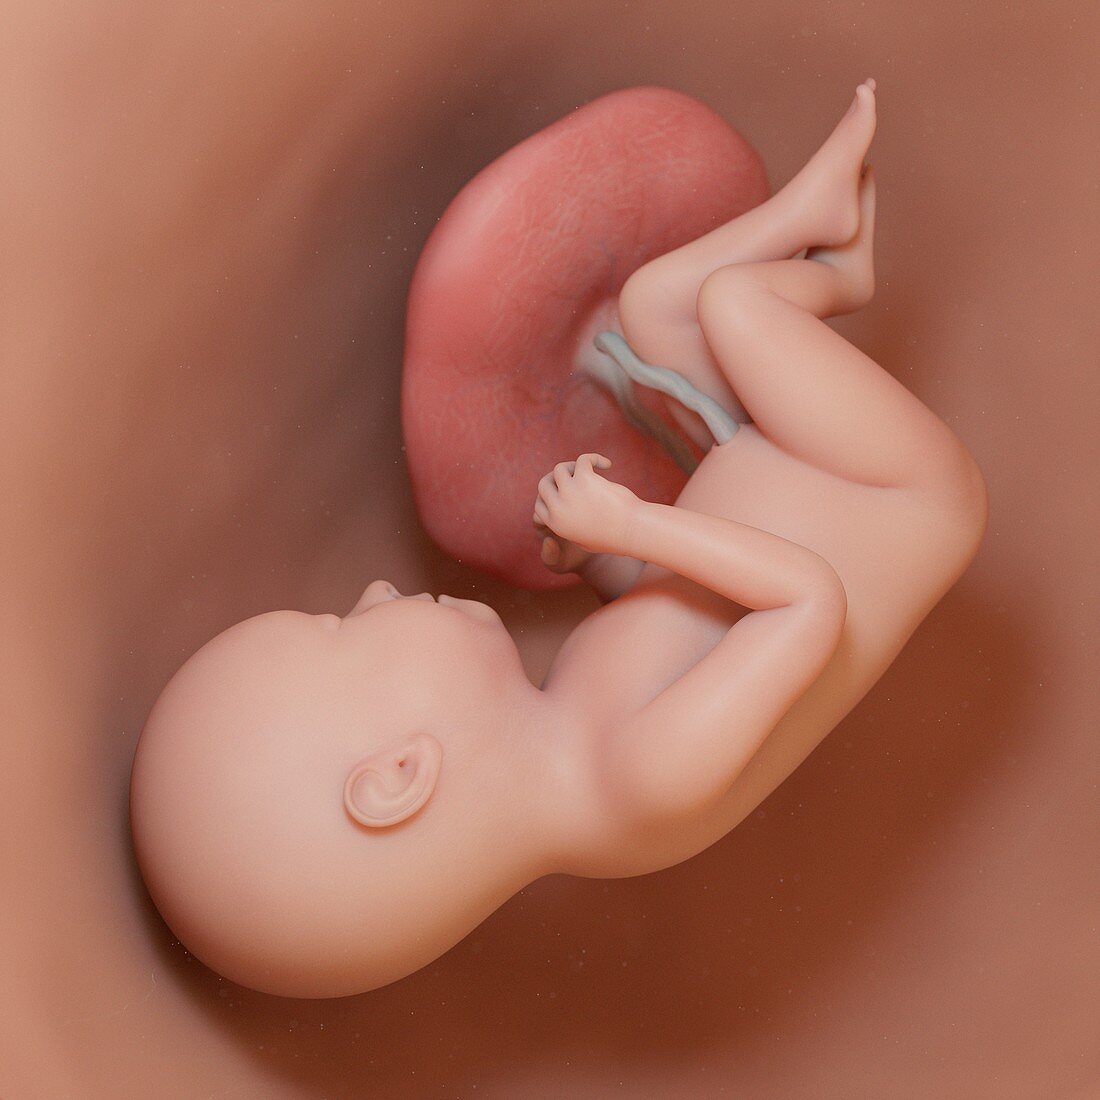 Fetus at week 37, illustration